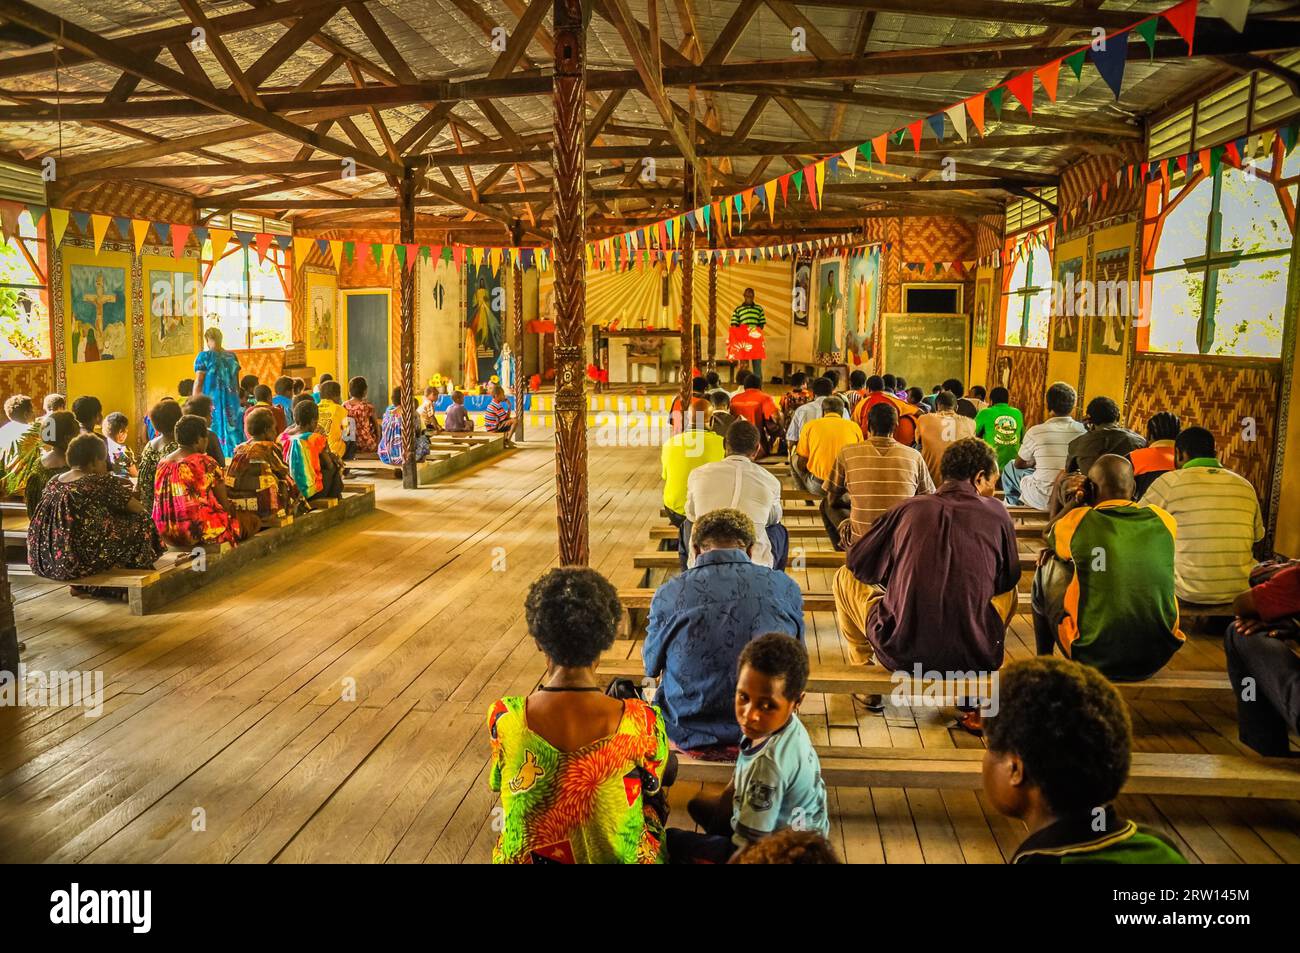 Palembe, Papúa Nueva Guinea, julio de 2015: Foto de personas nativas sentadas en bancos de madera durante la misa en la iglesia de madera en Palembe, río Sepik en Papúa Foto de stock